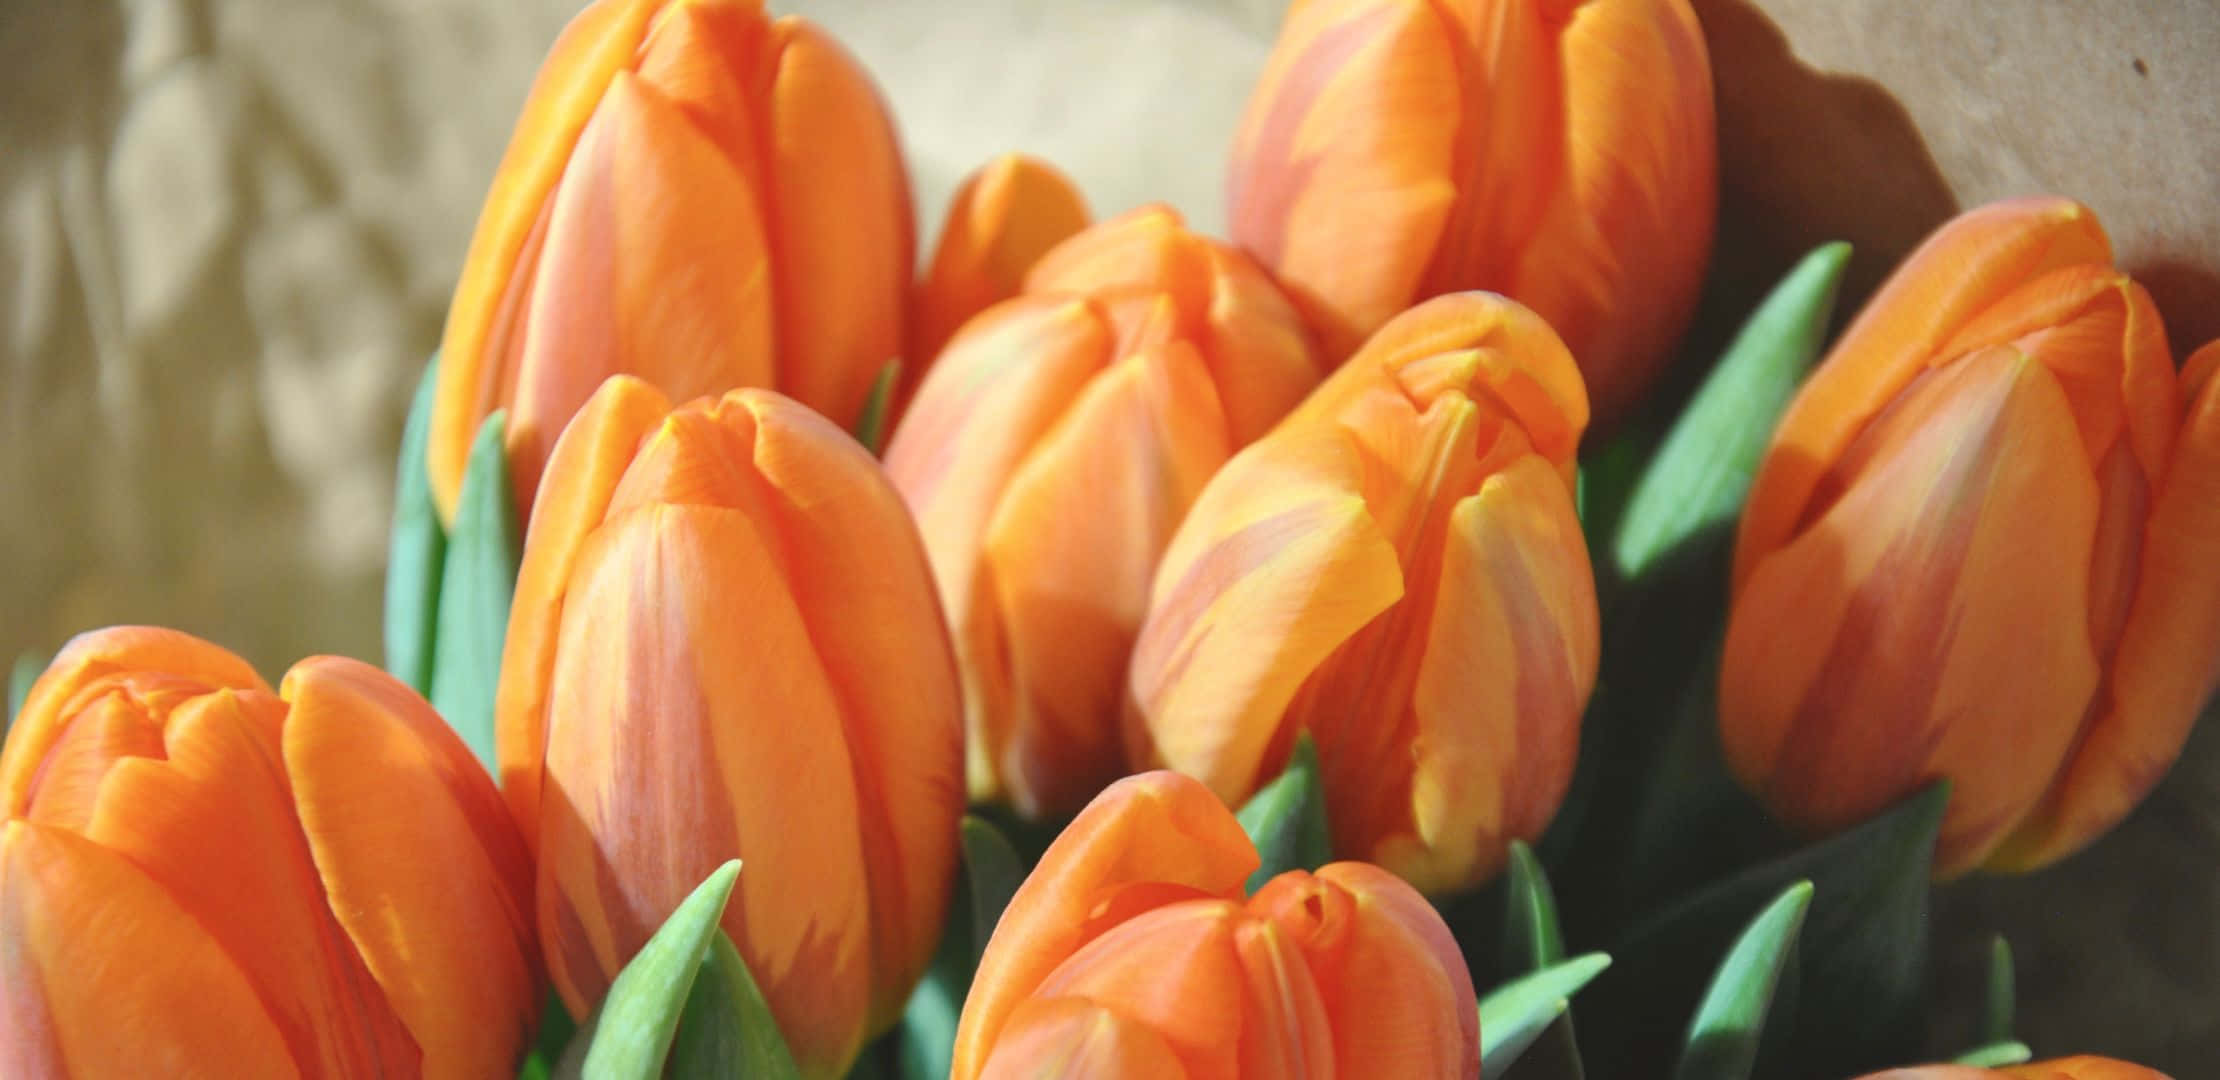 Orange Tulips In A Vase Wallpaper